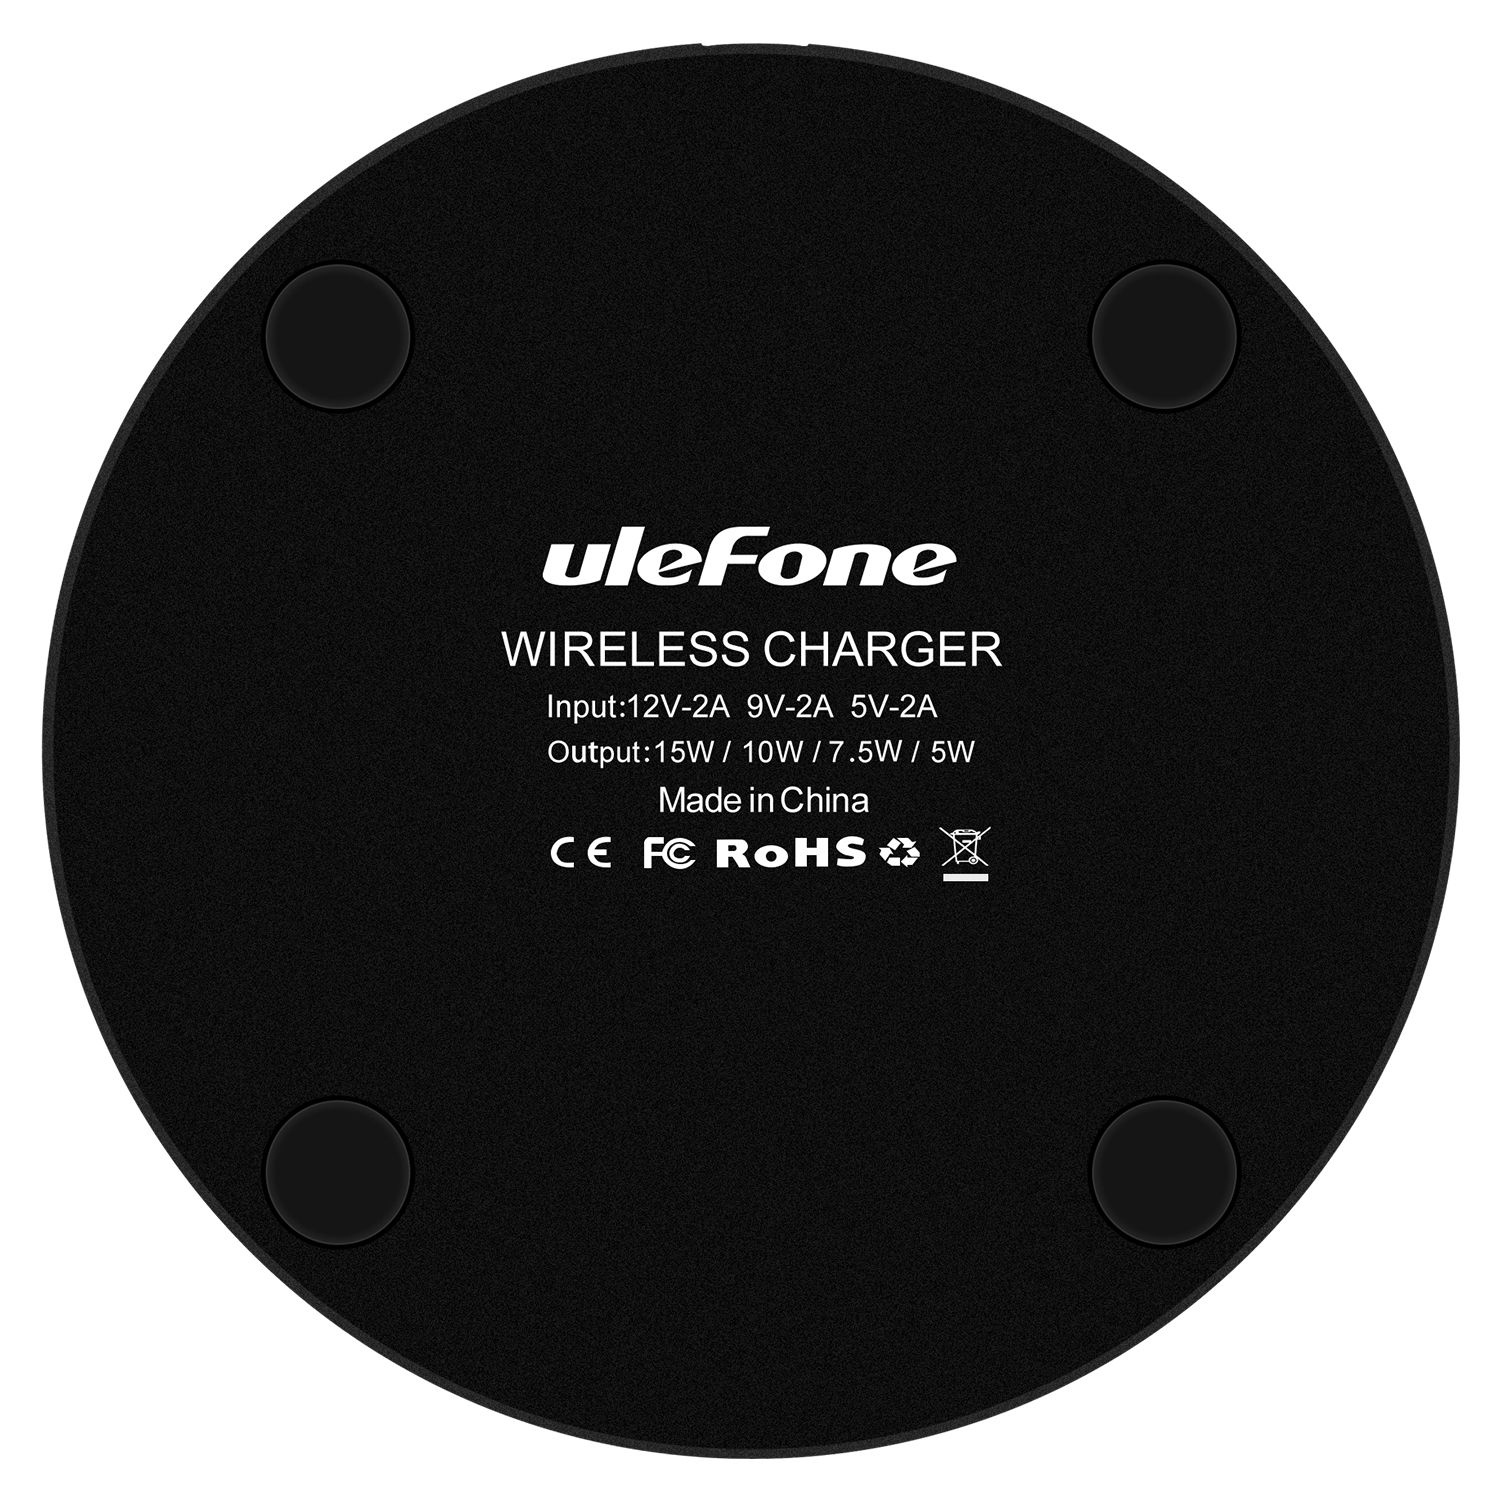 مع توافق واسع Ulefone UF005 15W لوحة شحن لاسلكية